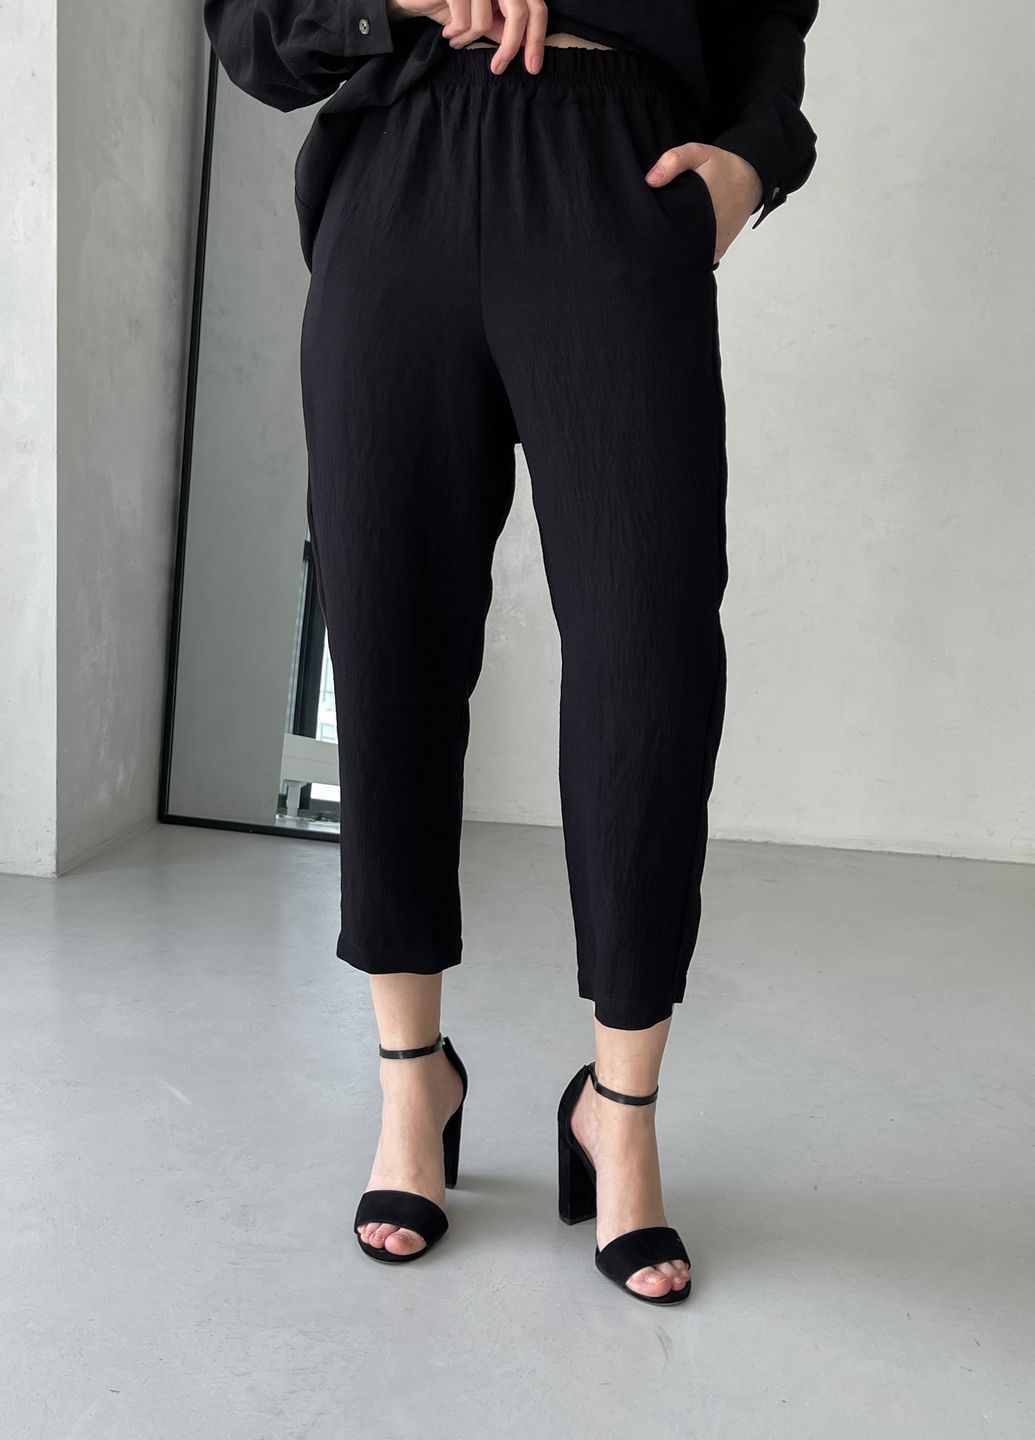 Купить Рубашка женская с длинным рукавом черного цвета из льна Merlini Беллуно 200000241, размер 42-44 в интернет-магазине